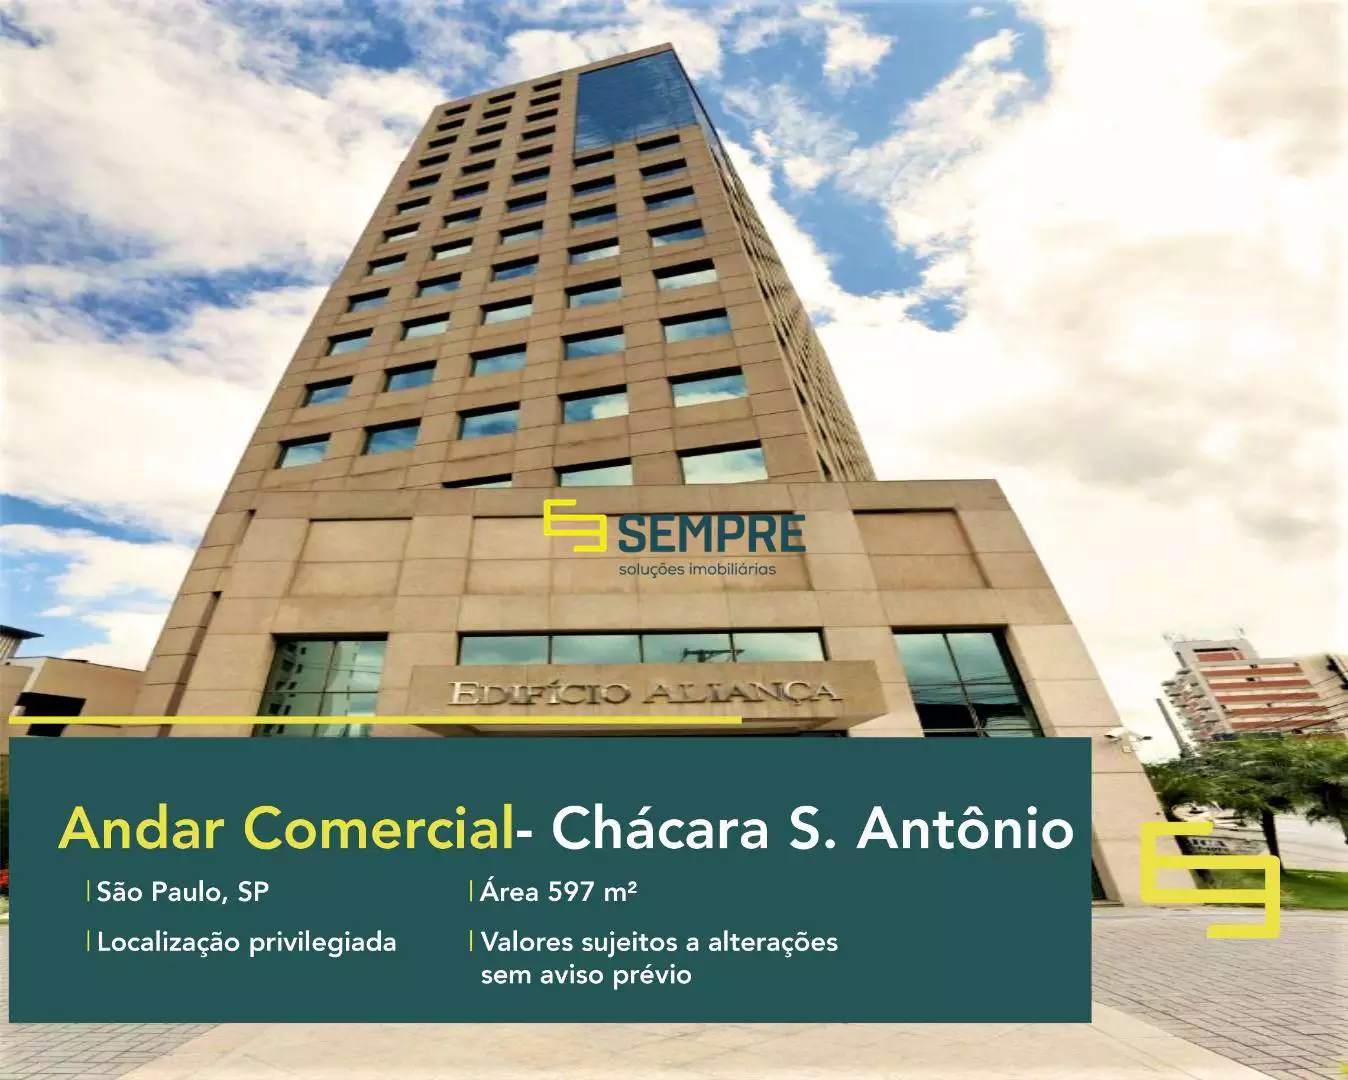 Lajes corporativas em São Paulo no Chácara Santo Antônio, excelente localização. O ponto comercial conta com área de 597 m².